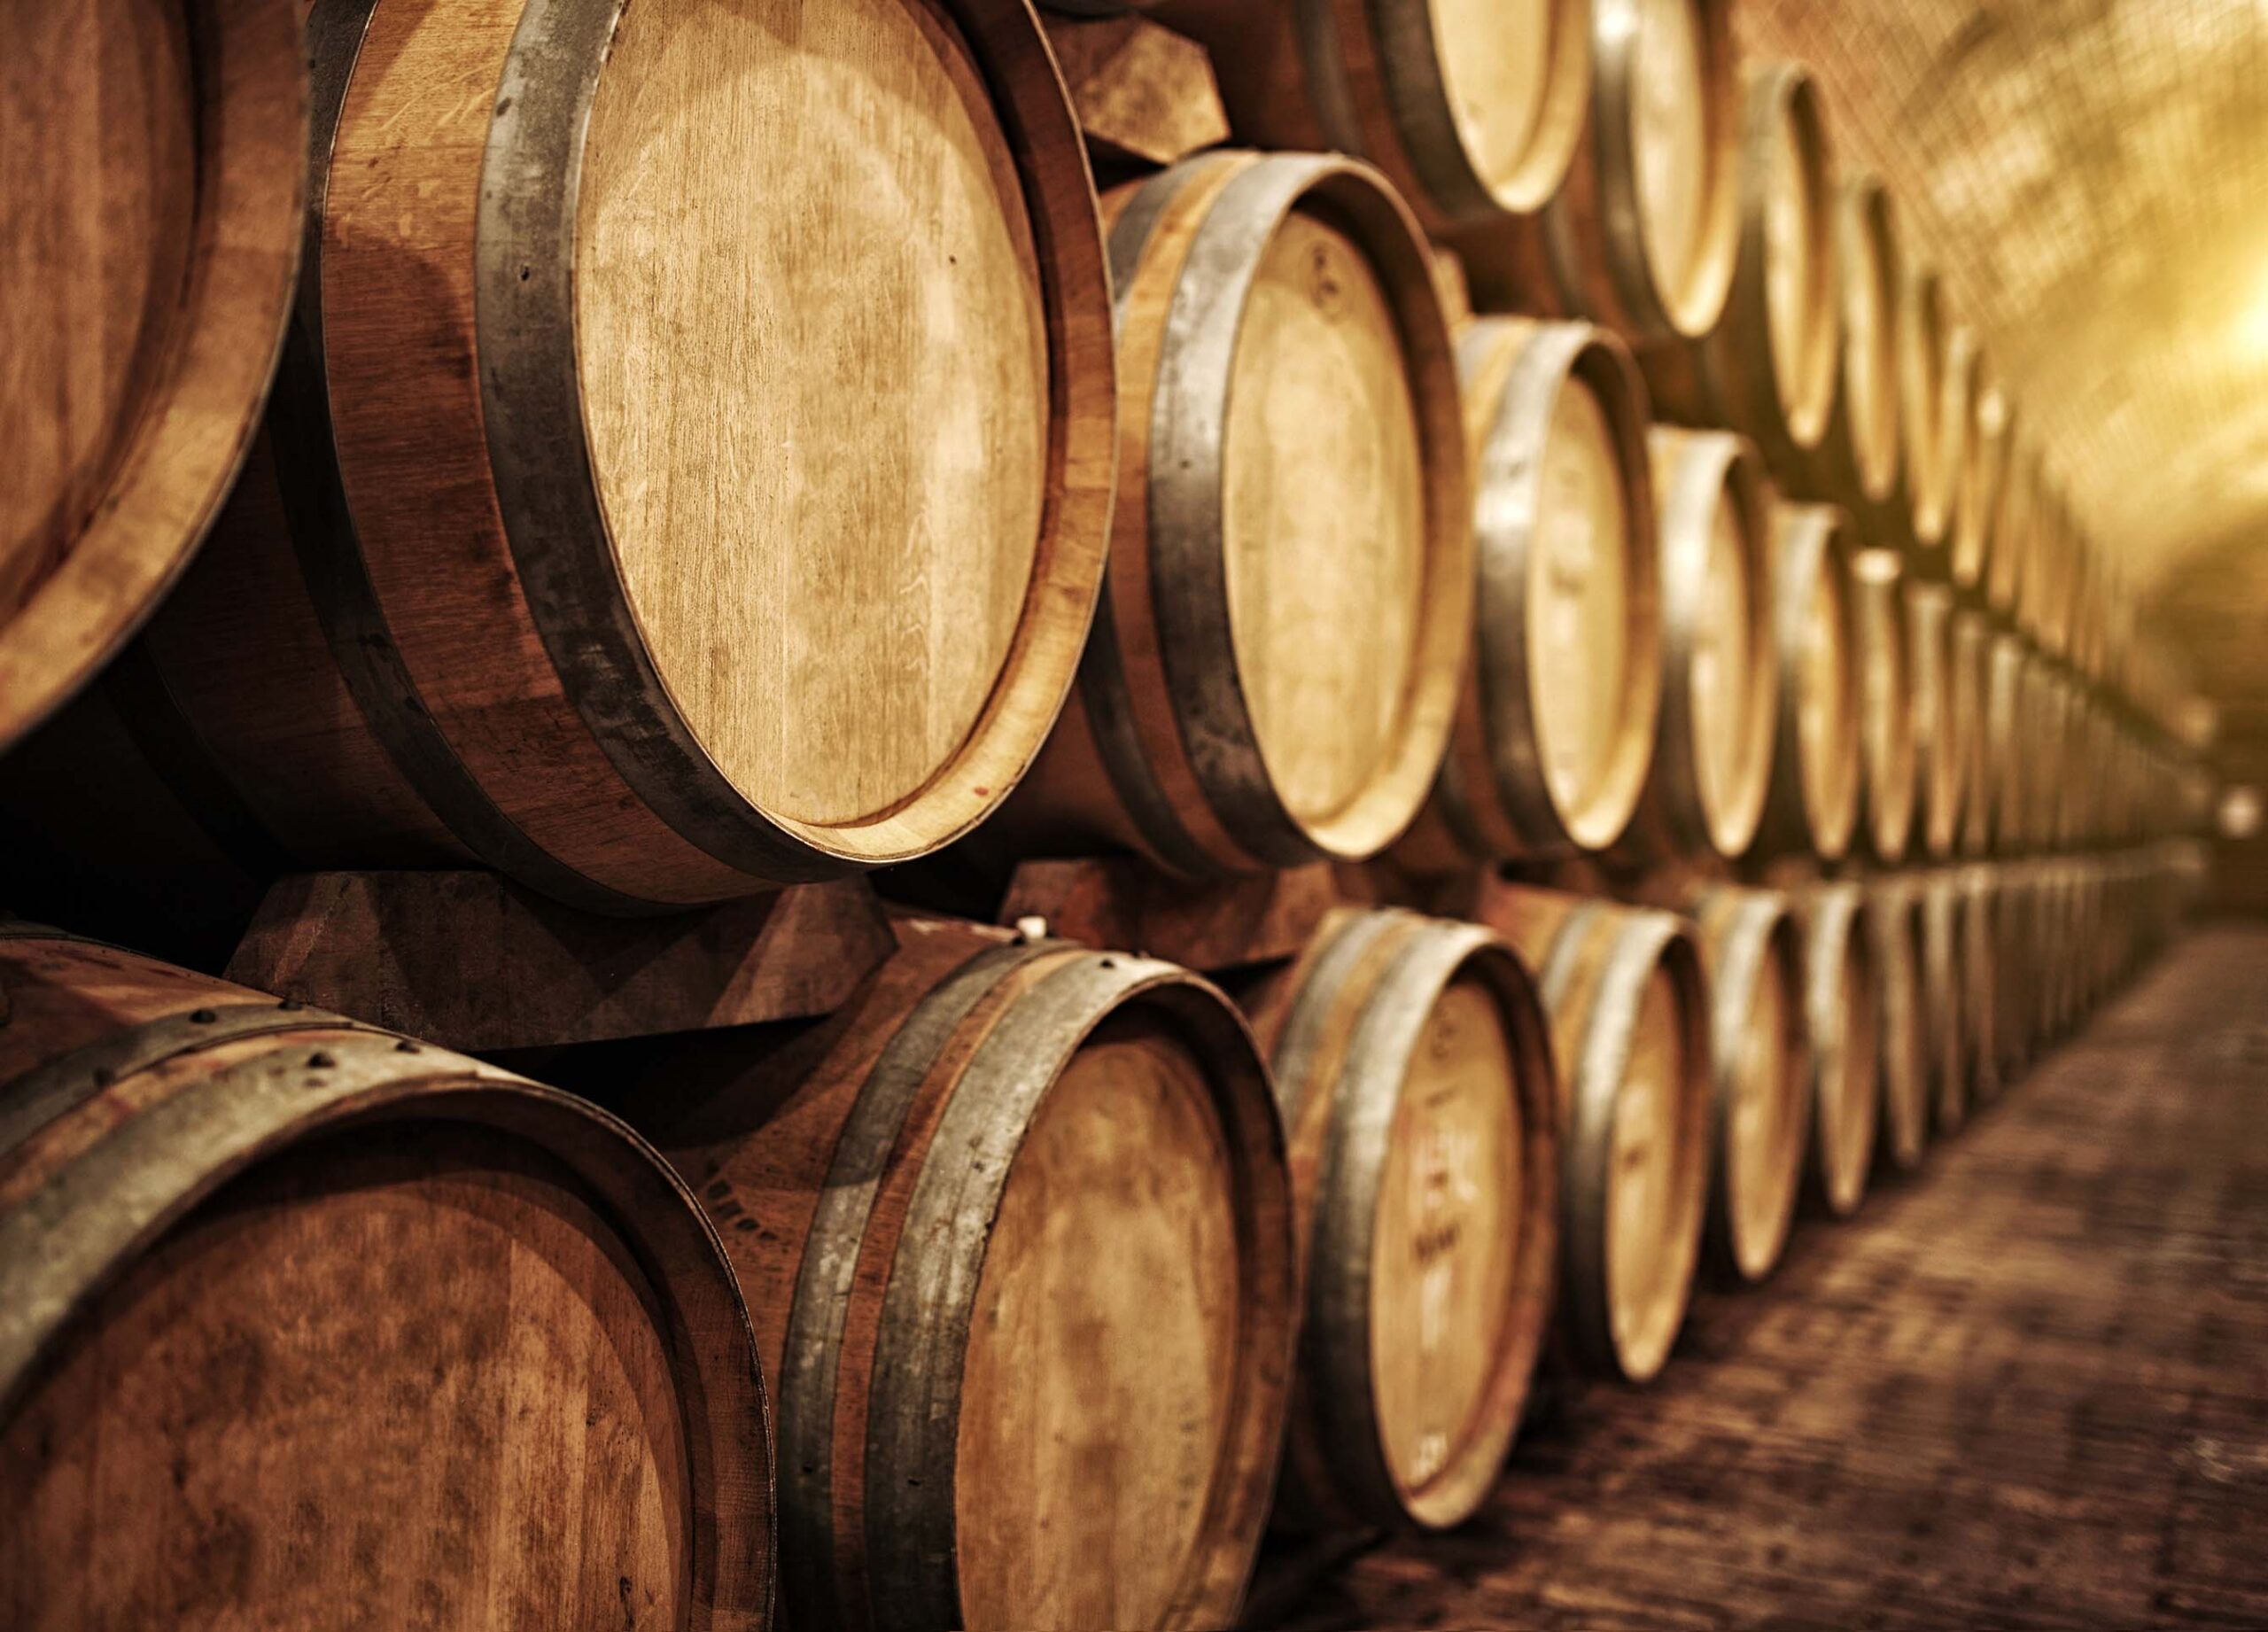 Wine Barrels storing Grigsby Vineyard wine in napa valley